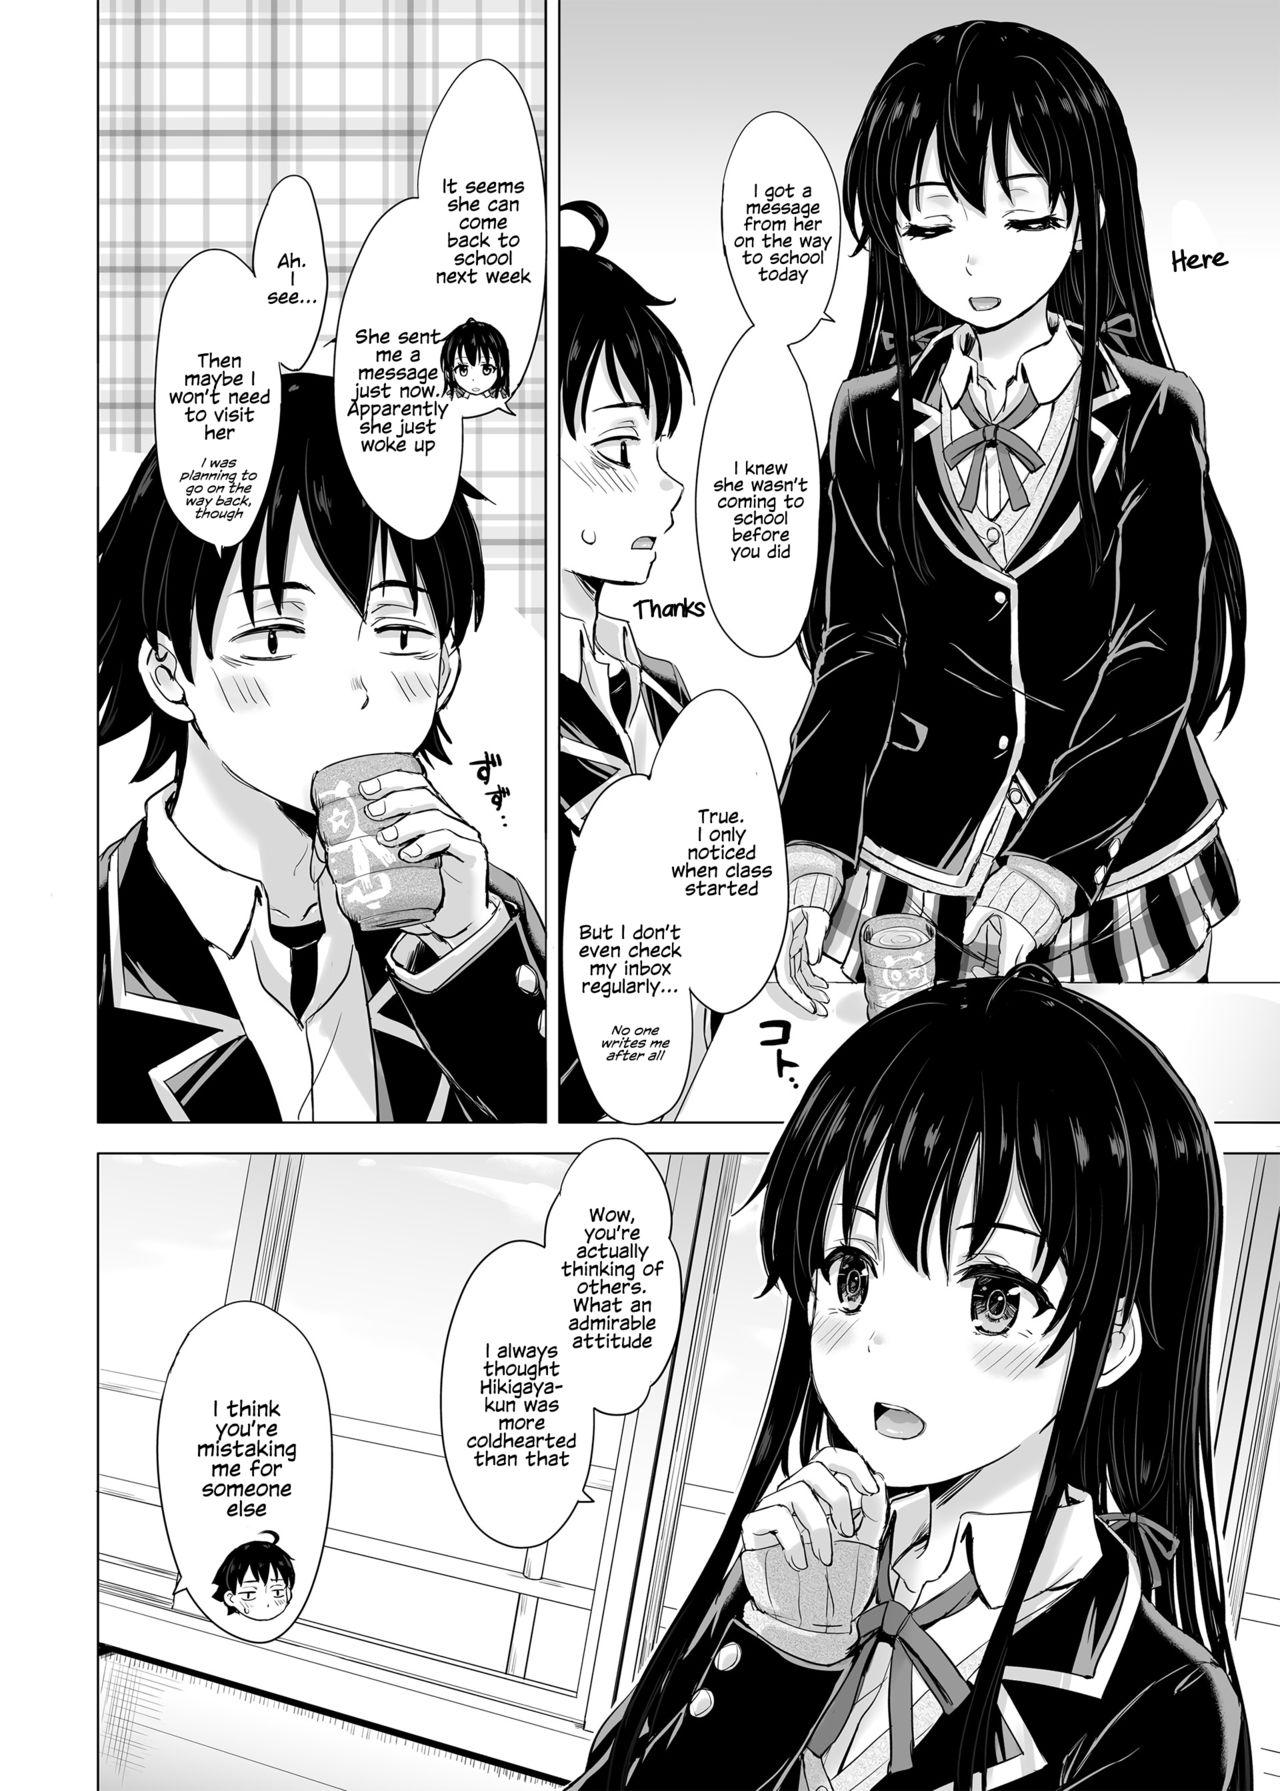 Exgirlfriend Yukinon Again. - Yahari ore no seishun love come wa machigatteiru Camwhore - Page 3